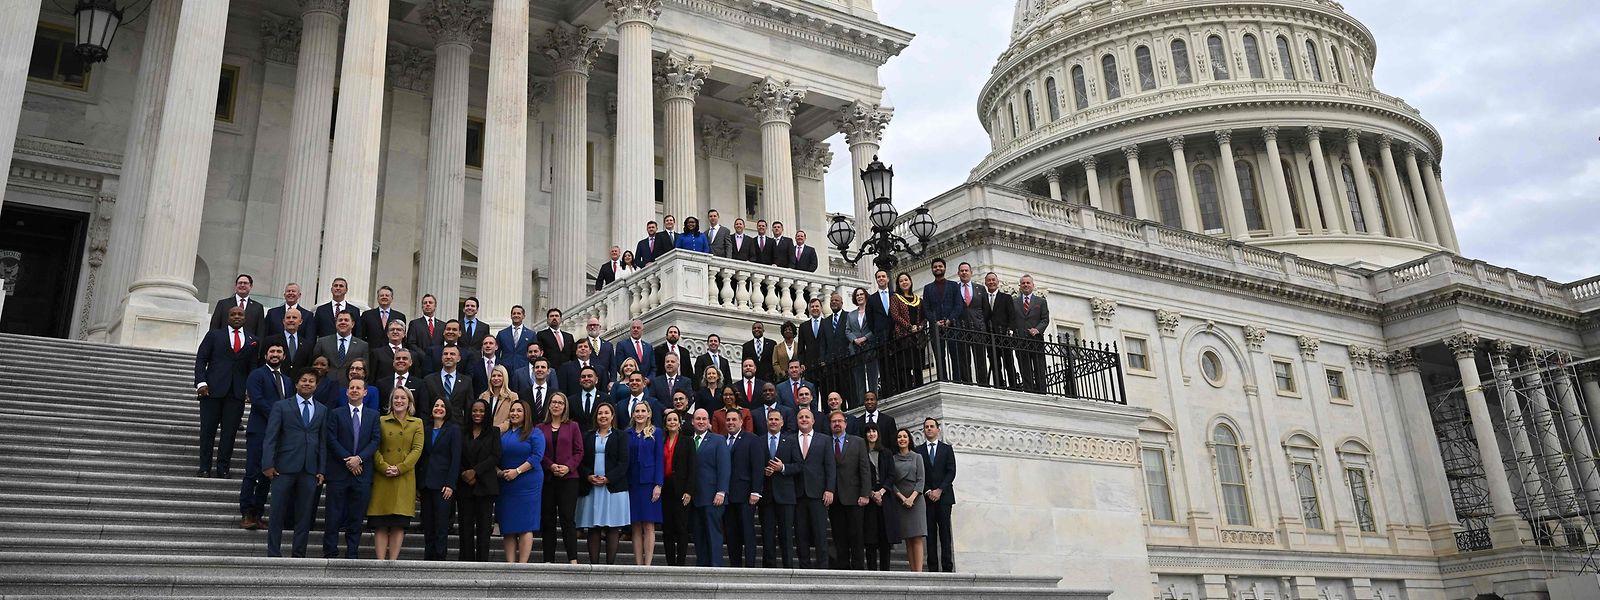 Gewählte Mitglieder des US-Repräsentantenhauses posieren für ein Foto auf den Stufen des Repräsentantenhauses im US-Kapitol.